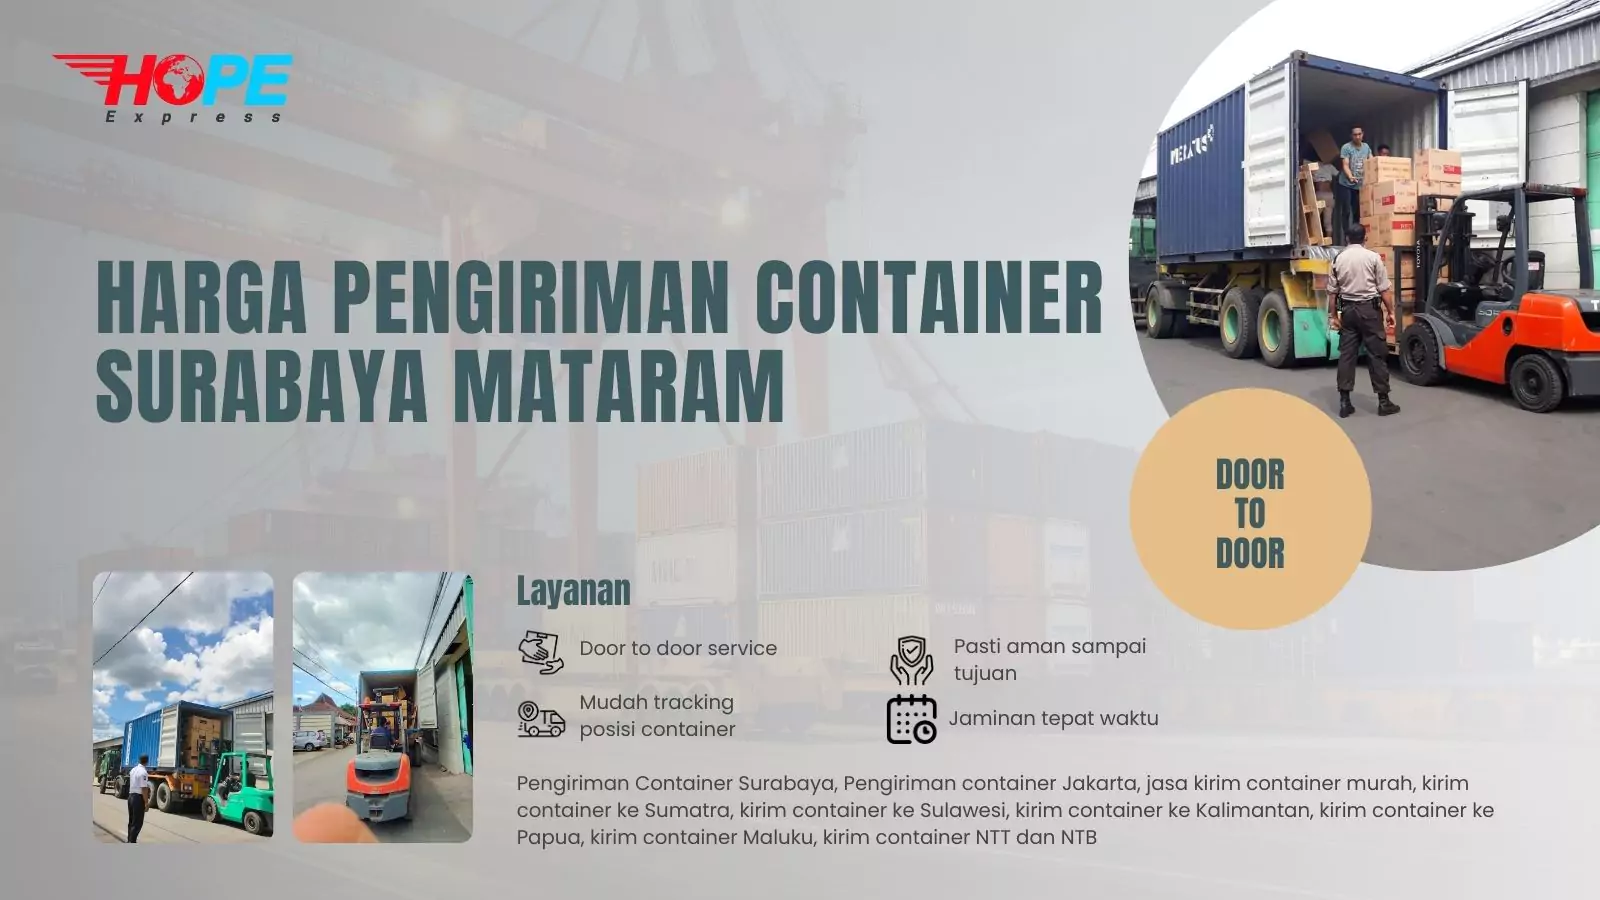 Harga Pengiriman Container Surabaya Mataram